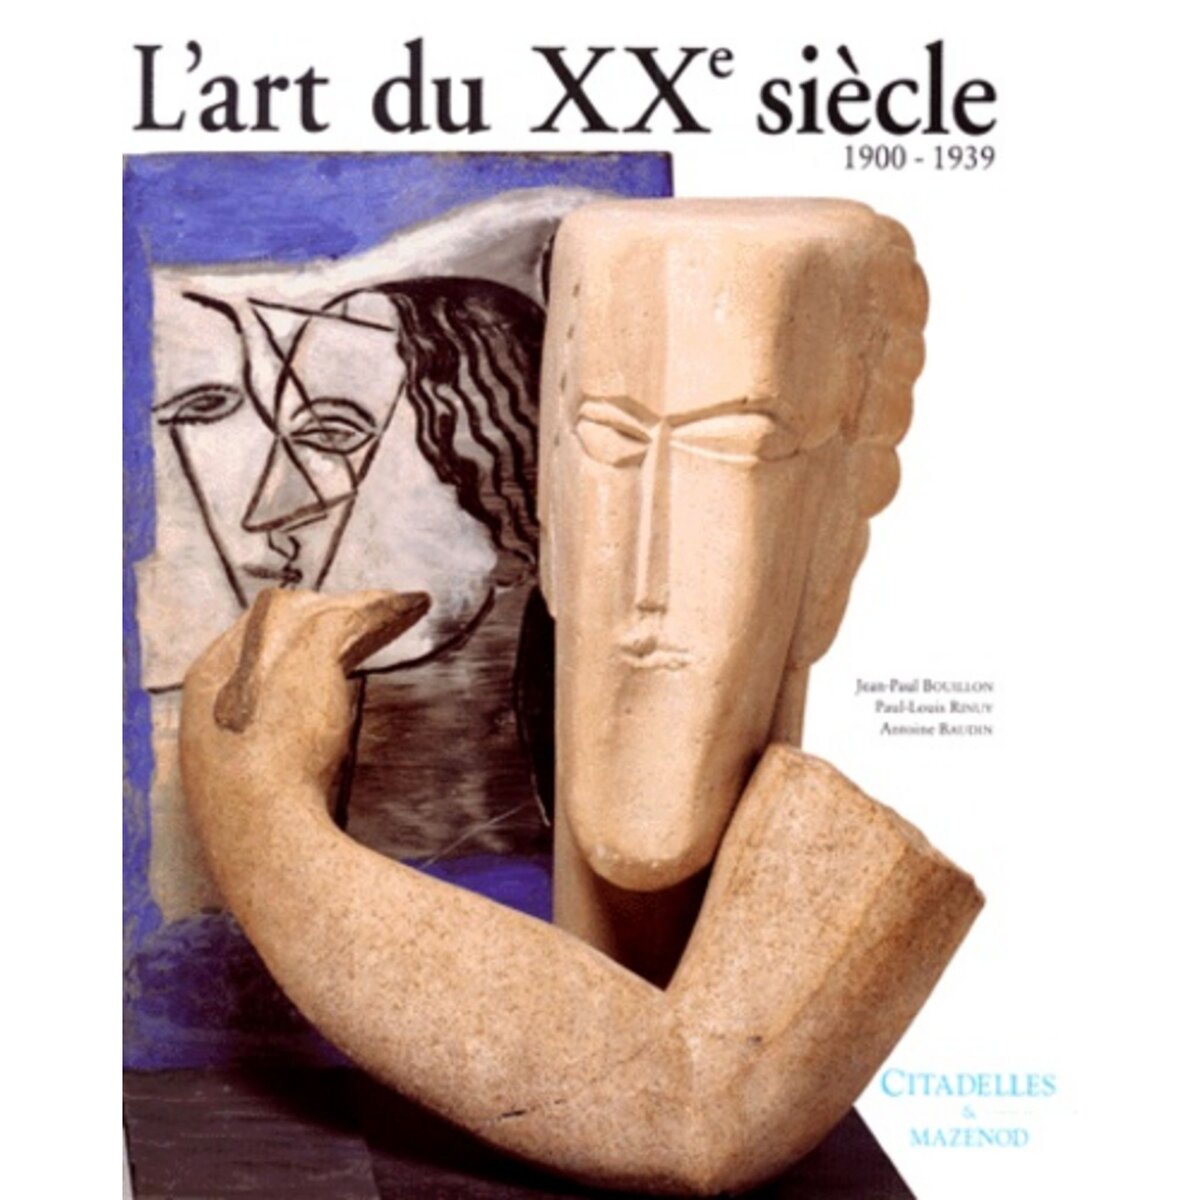  L'ART DU XXE SIECLE. 1900-1939, Bouillon Jean-Paul